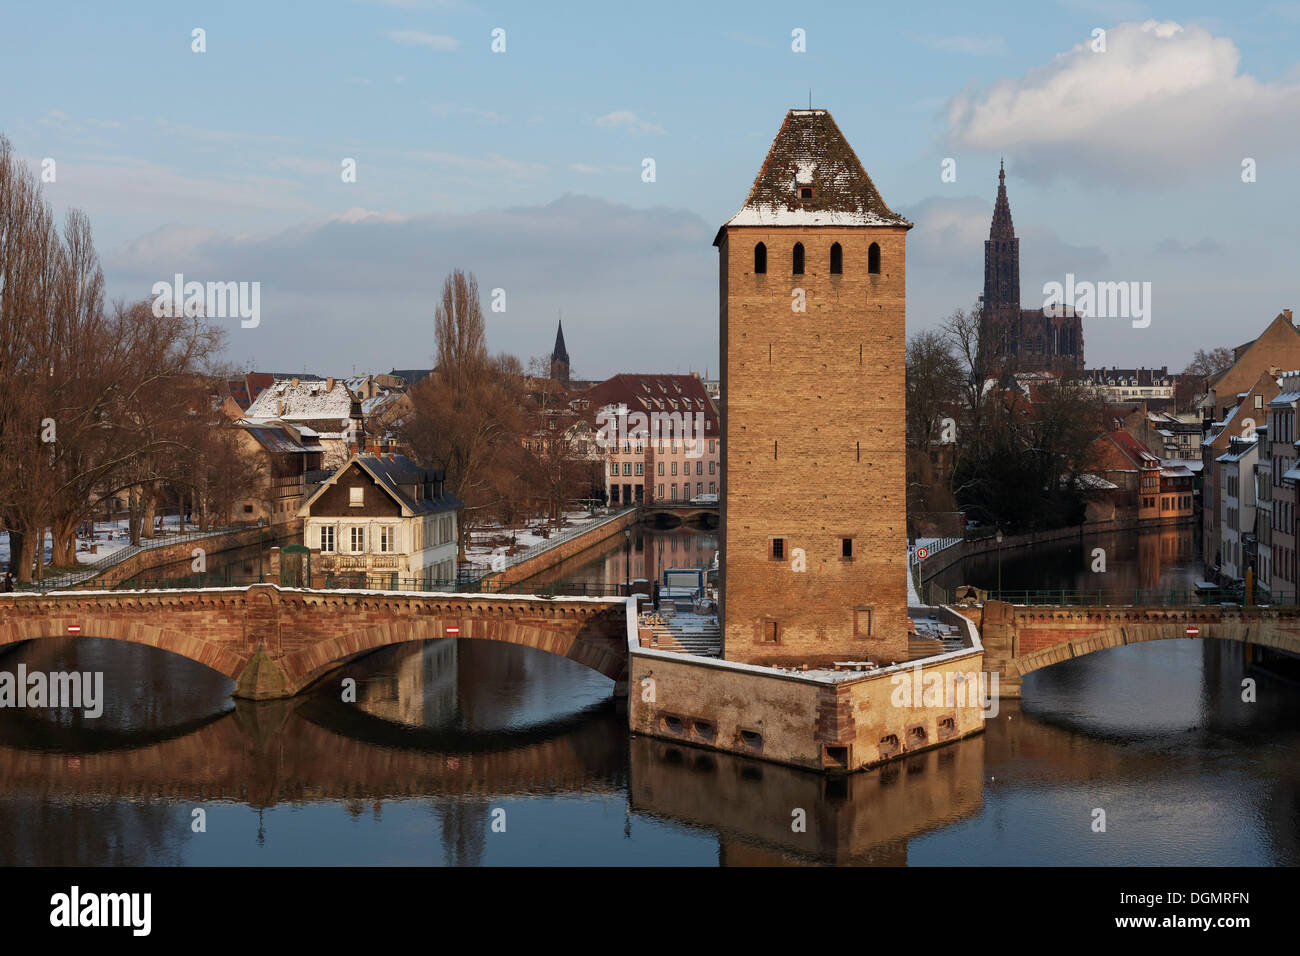 Ponts couverts ou ponts couverts sur l'Ill et de la tour de la muraille de la ville, la Petite France, Strasbourg Banque D'Images